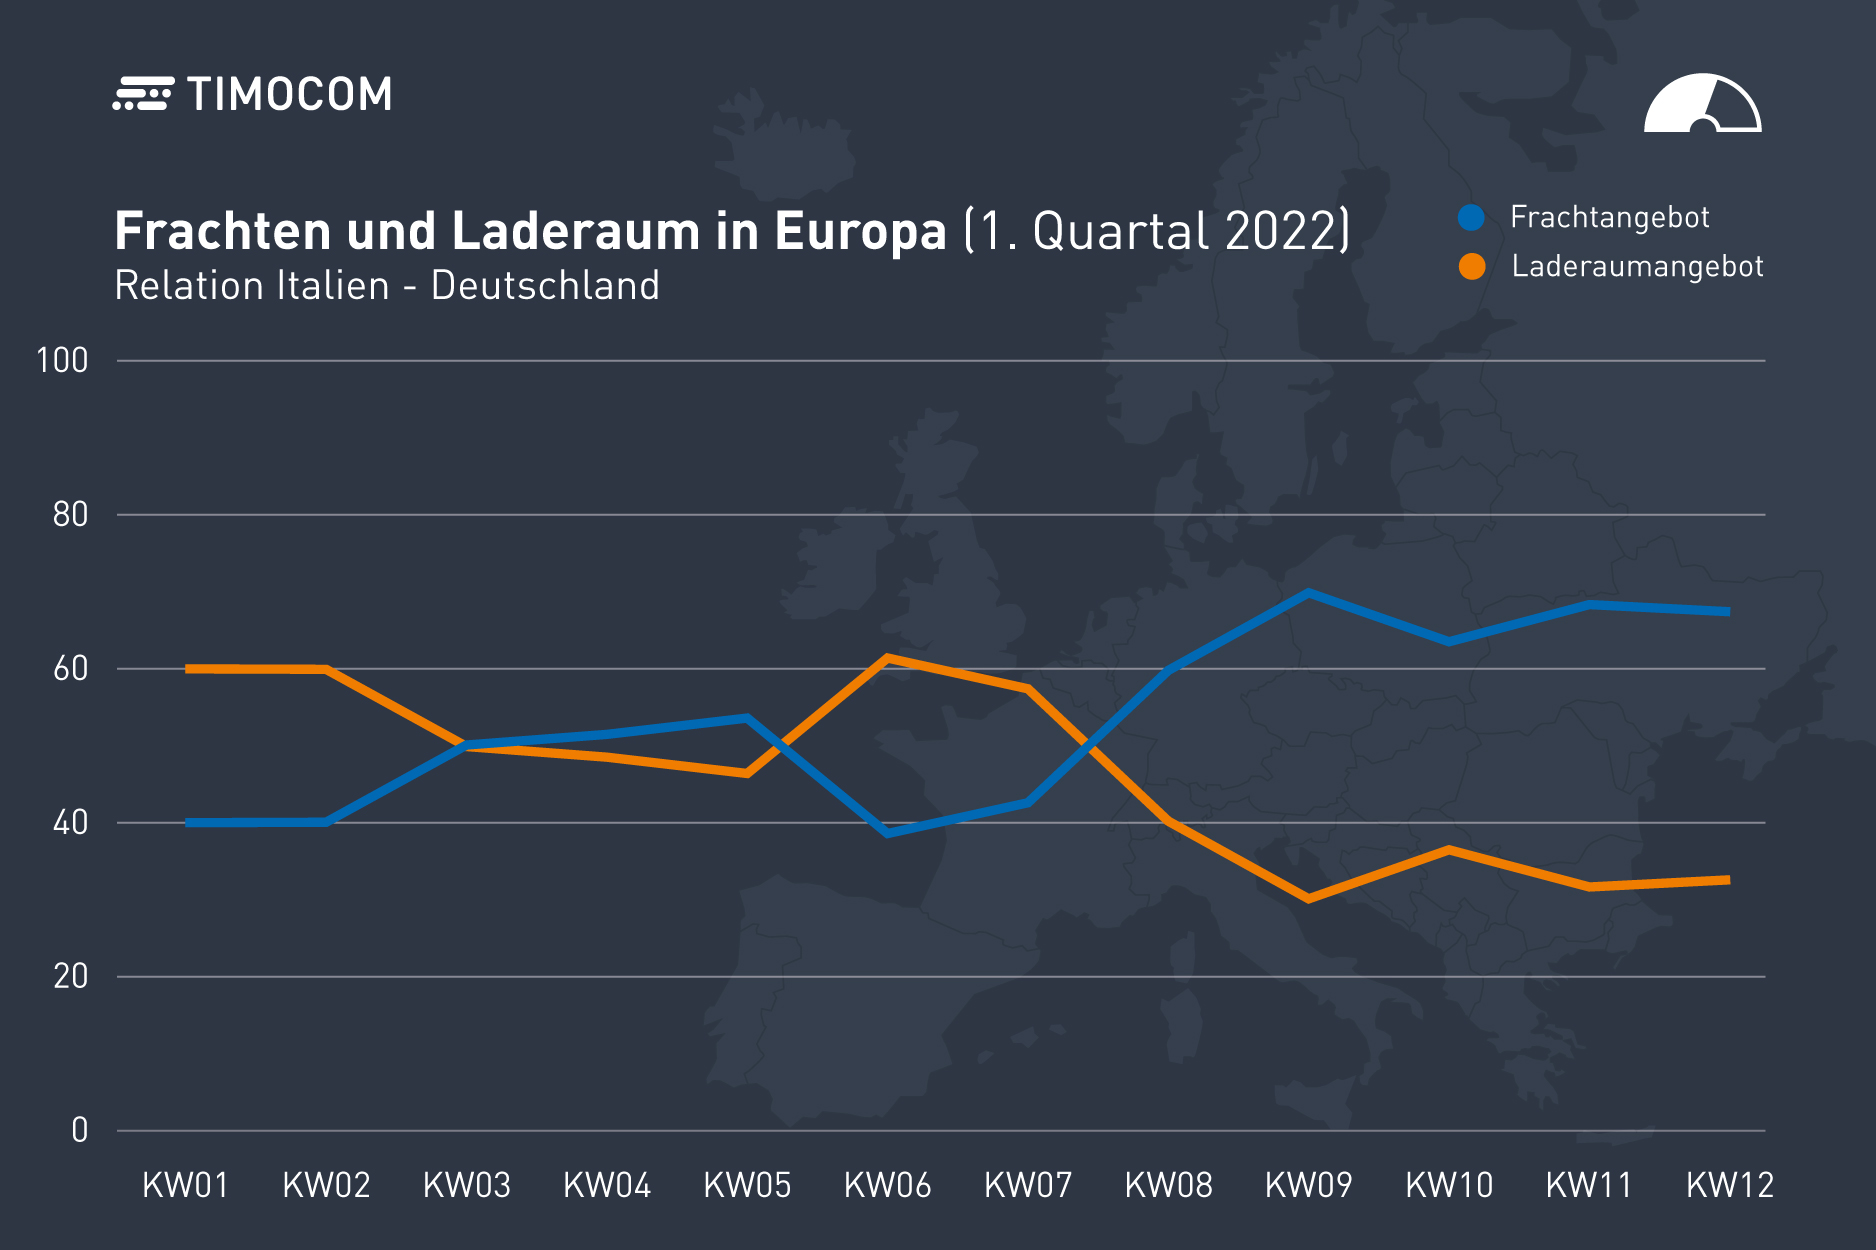 Frachten und Laderaum von Italien nach Deutschland im 1. Quartal 2022